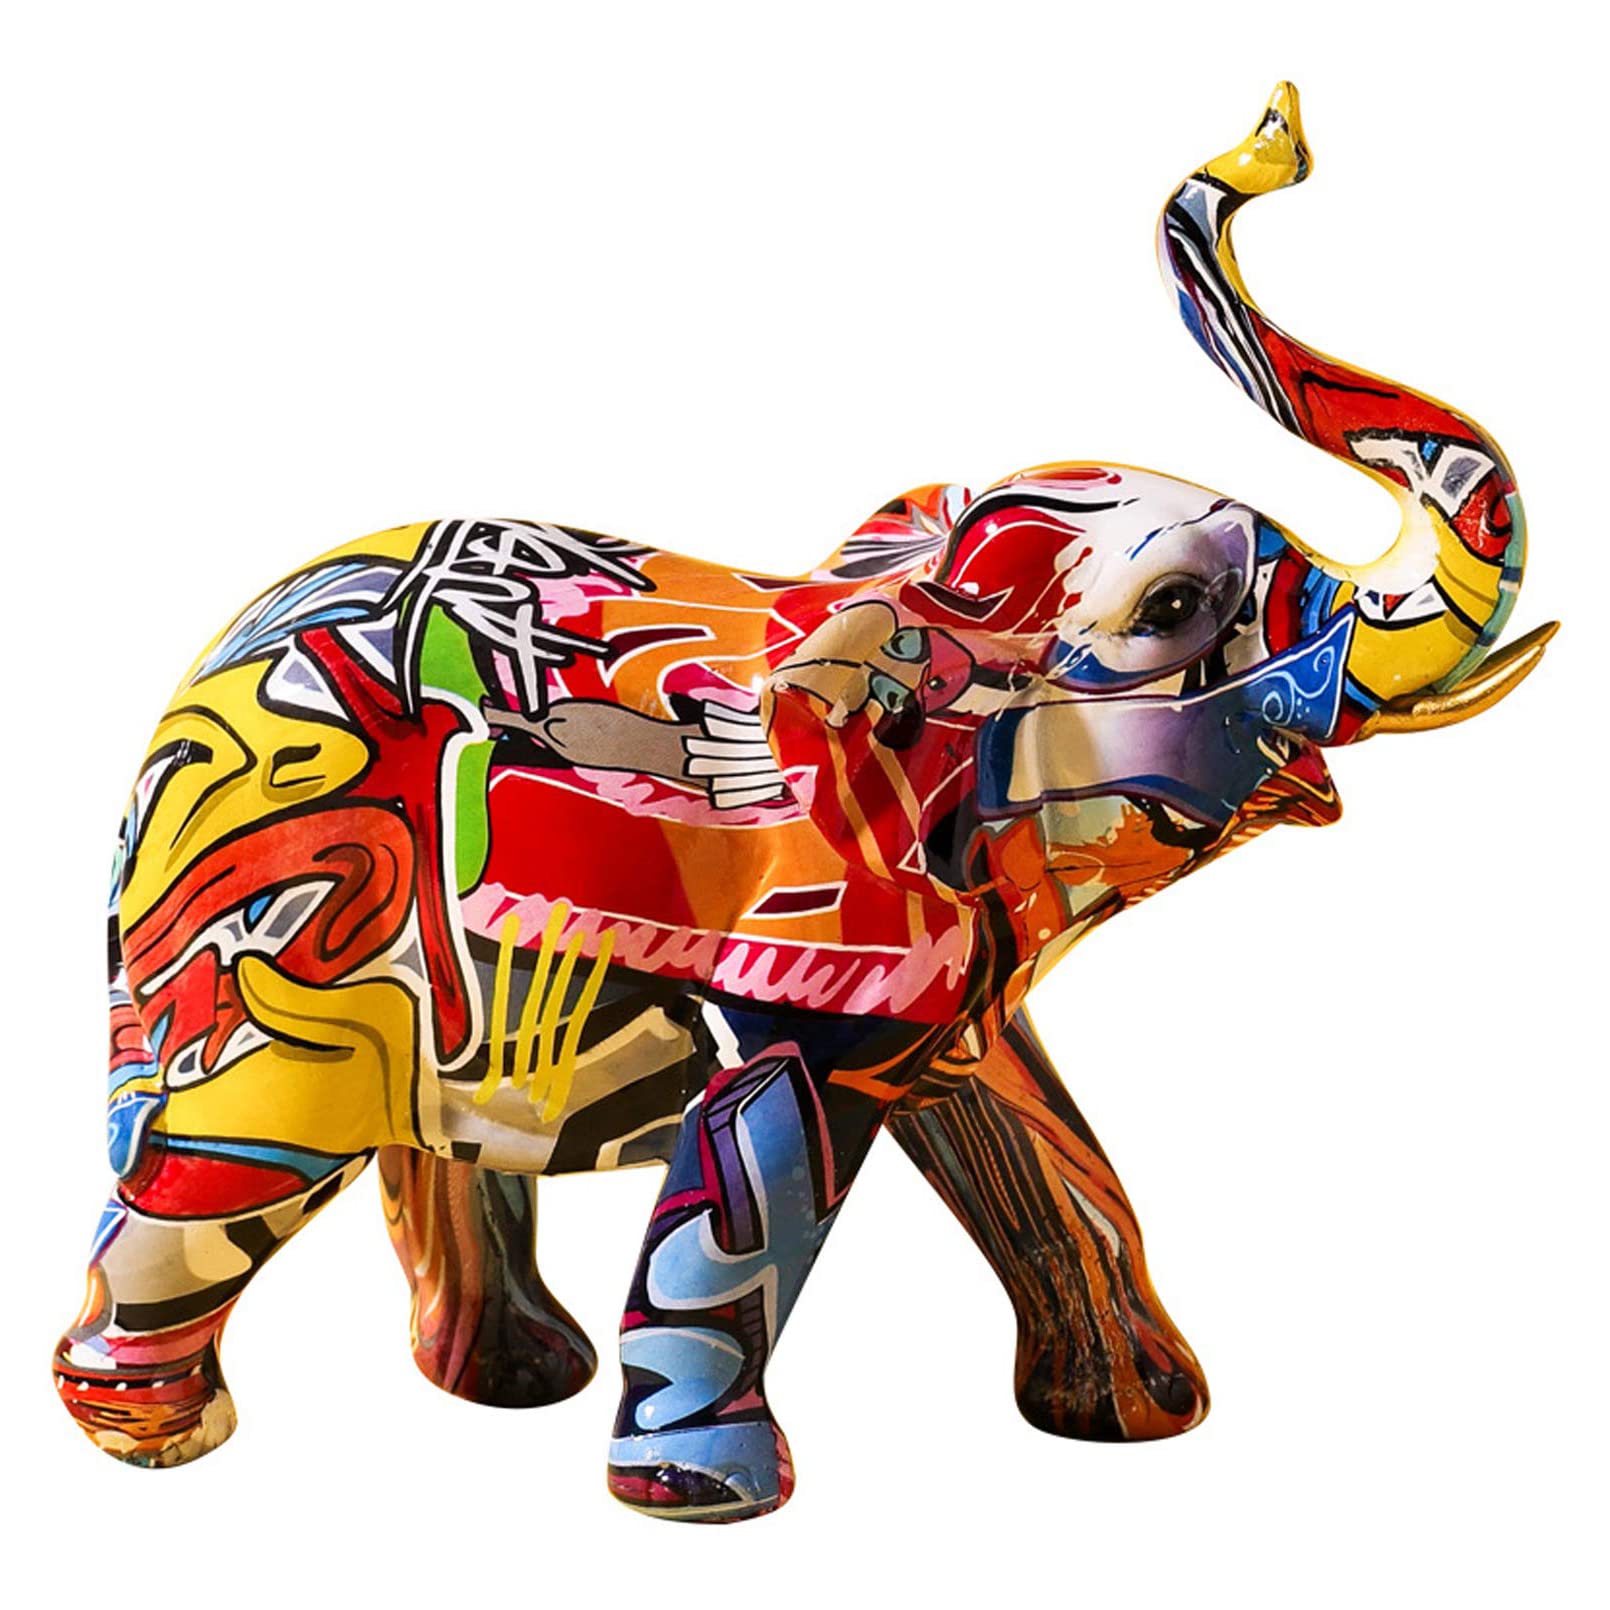 Moderne Elefanten Deko Elefant Skulptur und Pop Art Dekofiguren Für Liebhaber von Pop-Art und moderner Kunst, die eine kreative und farbenfrohe Dekoration suchen, Deko-Figur 24cm hoch